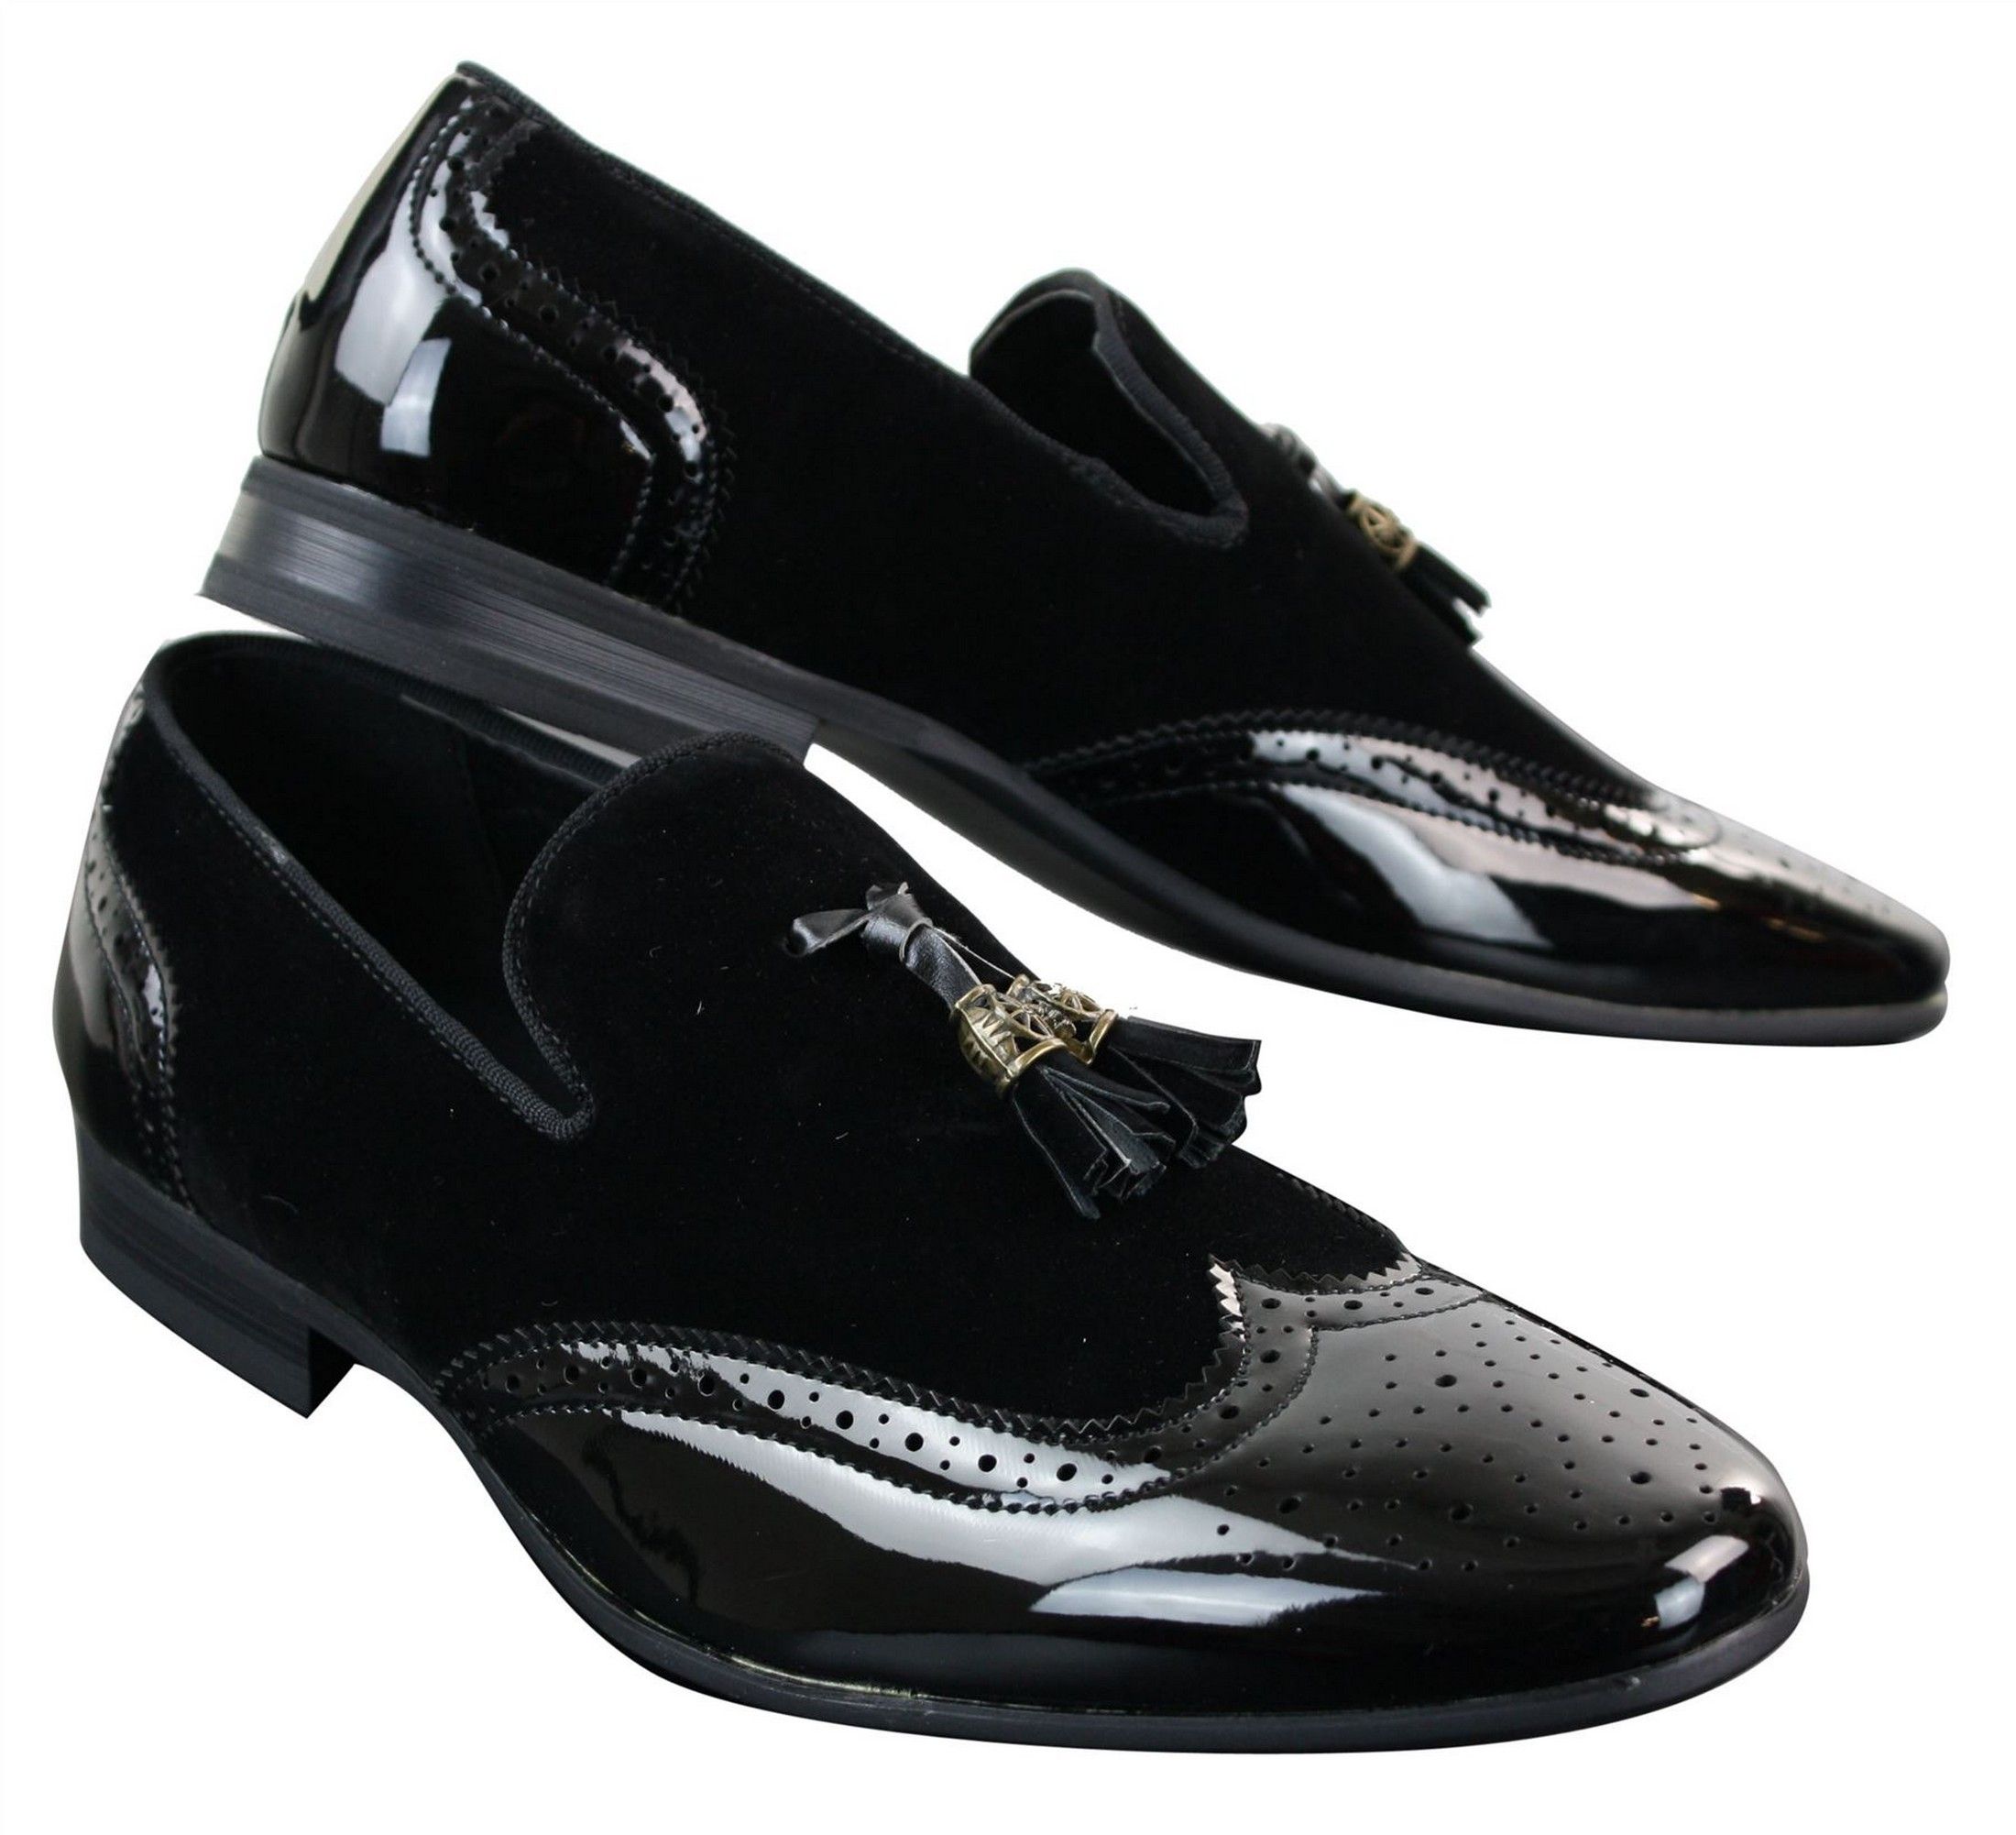 Patron 239-10 Mens Slip On Tassel Driving Shoes Shiny Black Patent ...